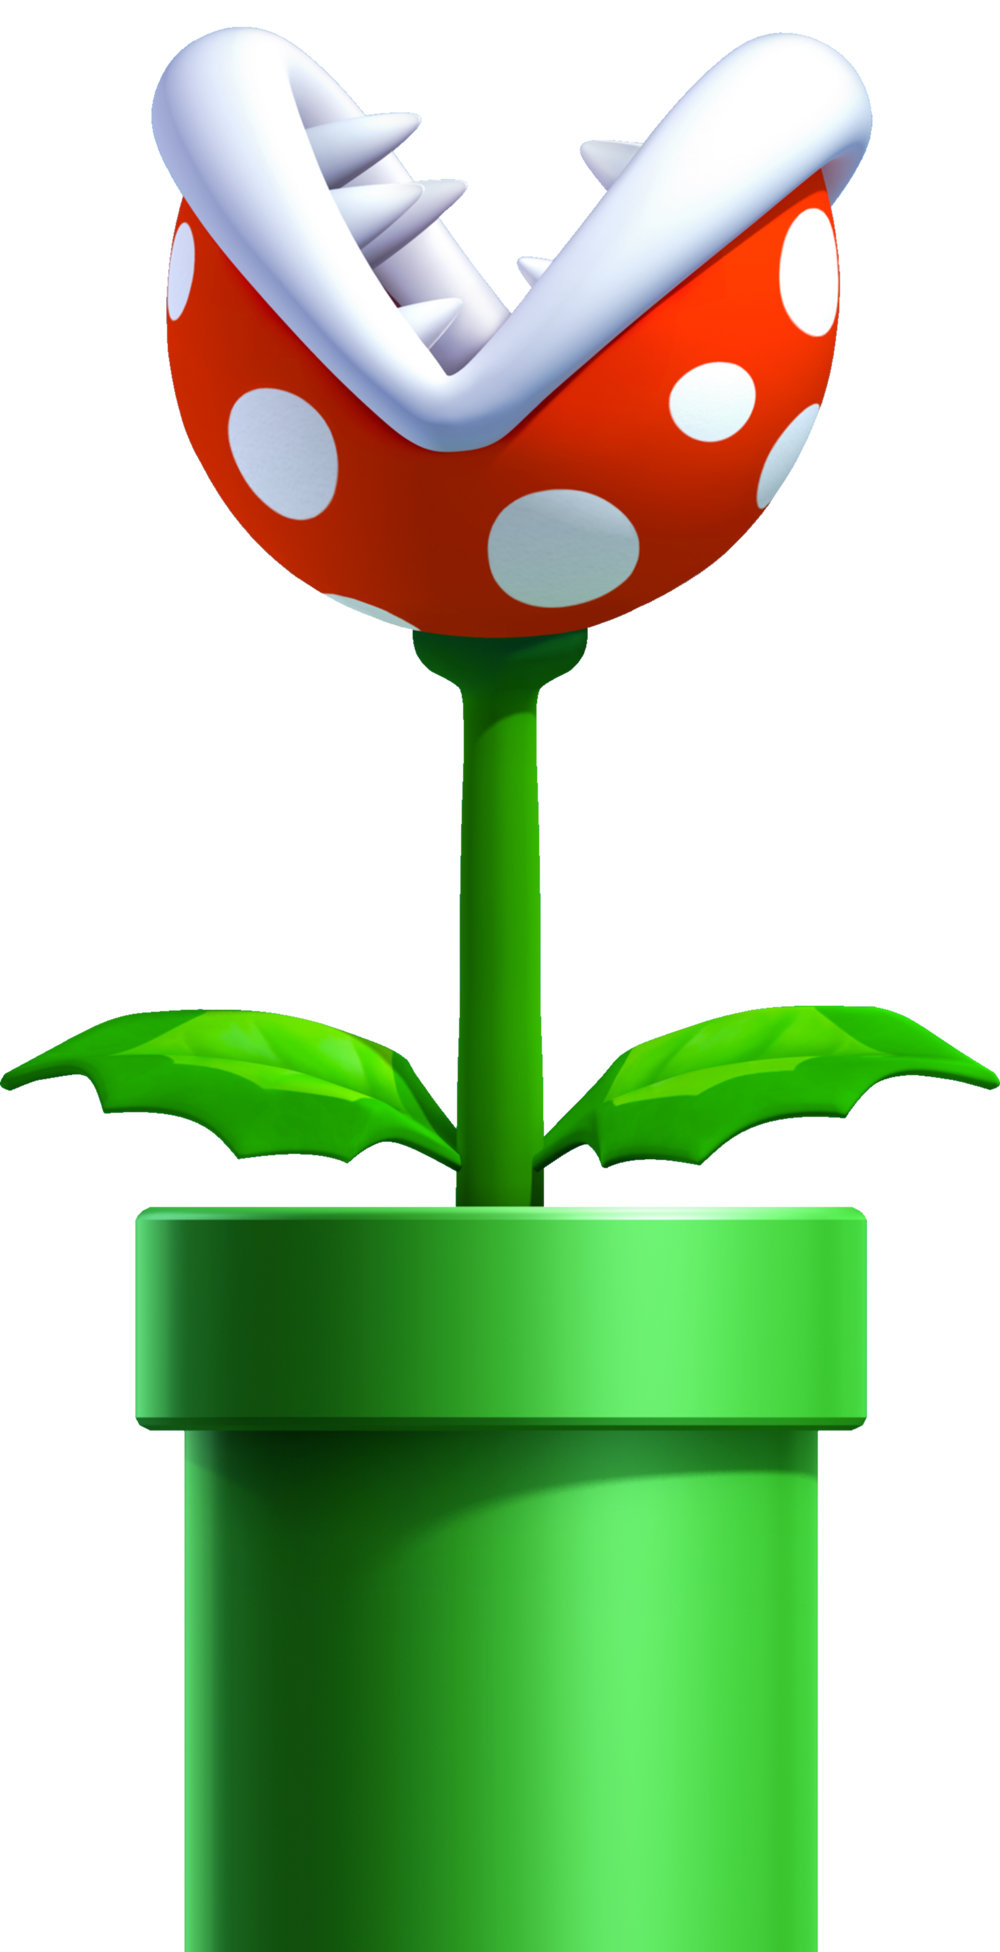 New Super Mario Bros. 3, Video Game Fanon Wiki